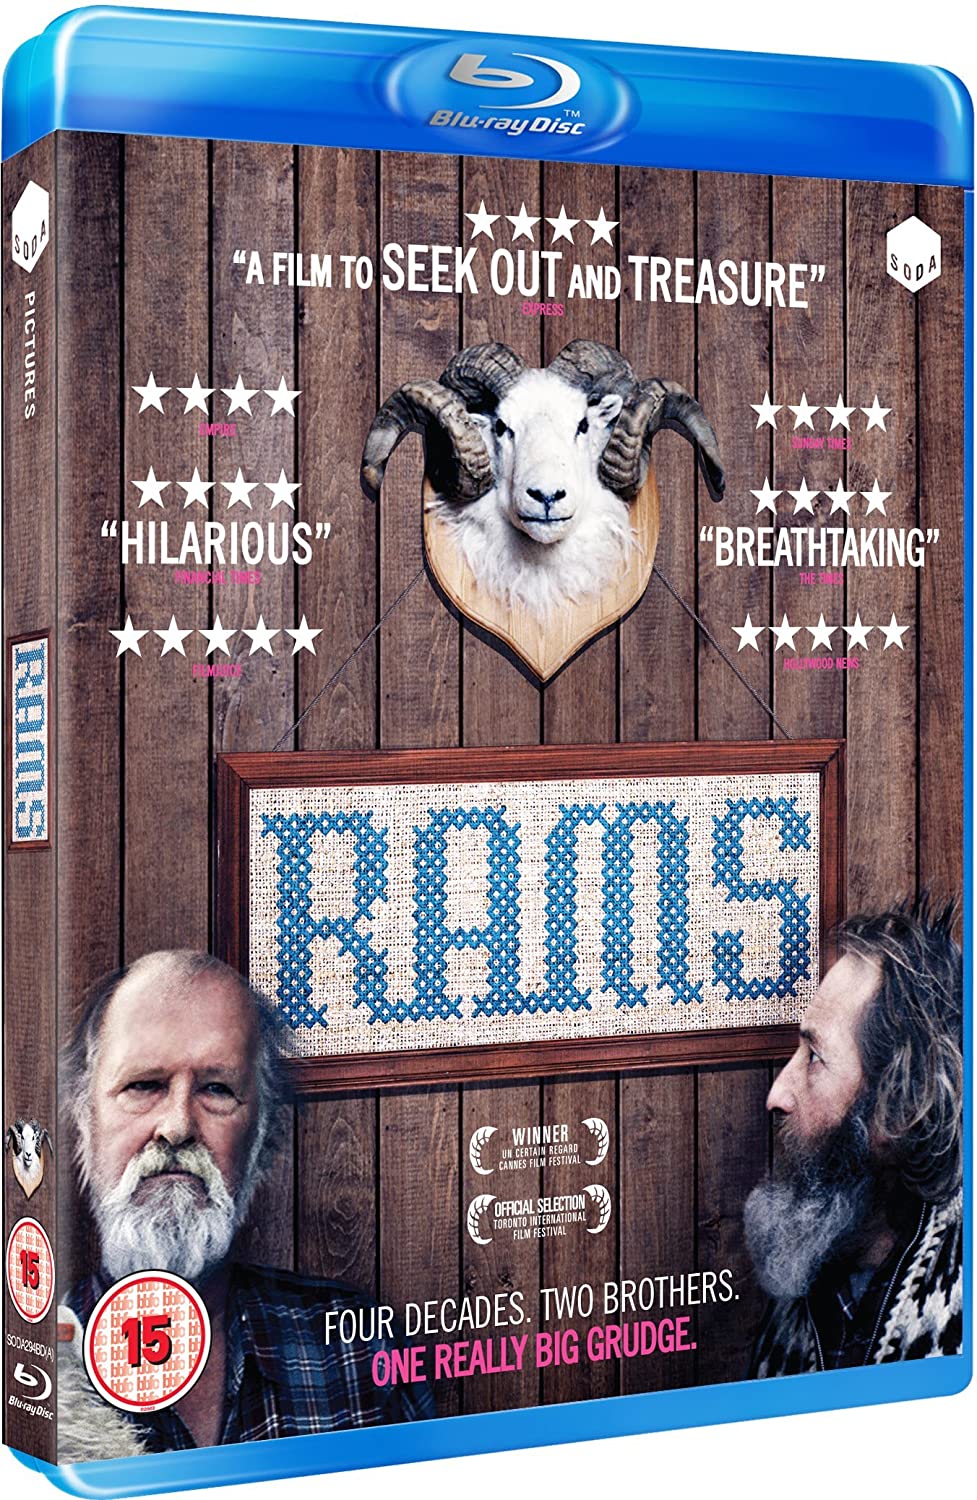 Rams [2016] – Drama [Blu-ray]